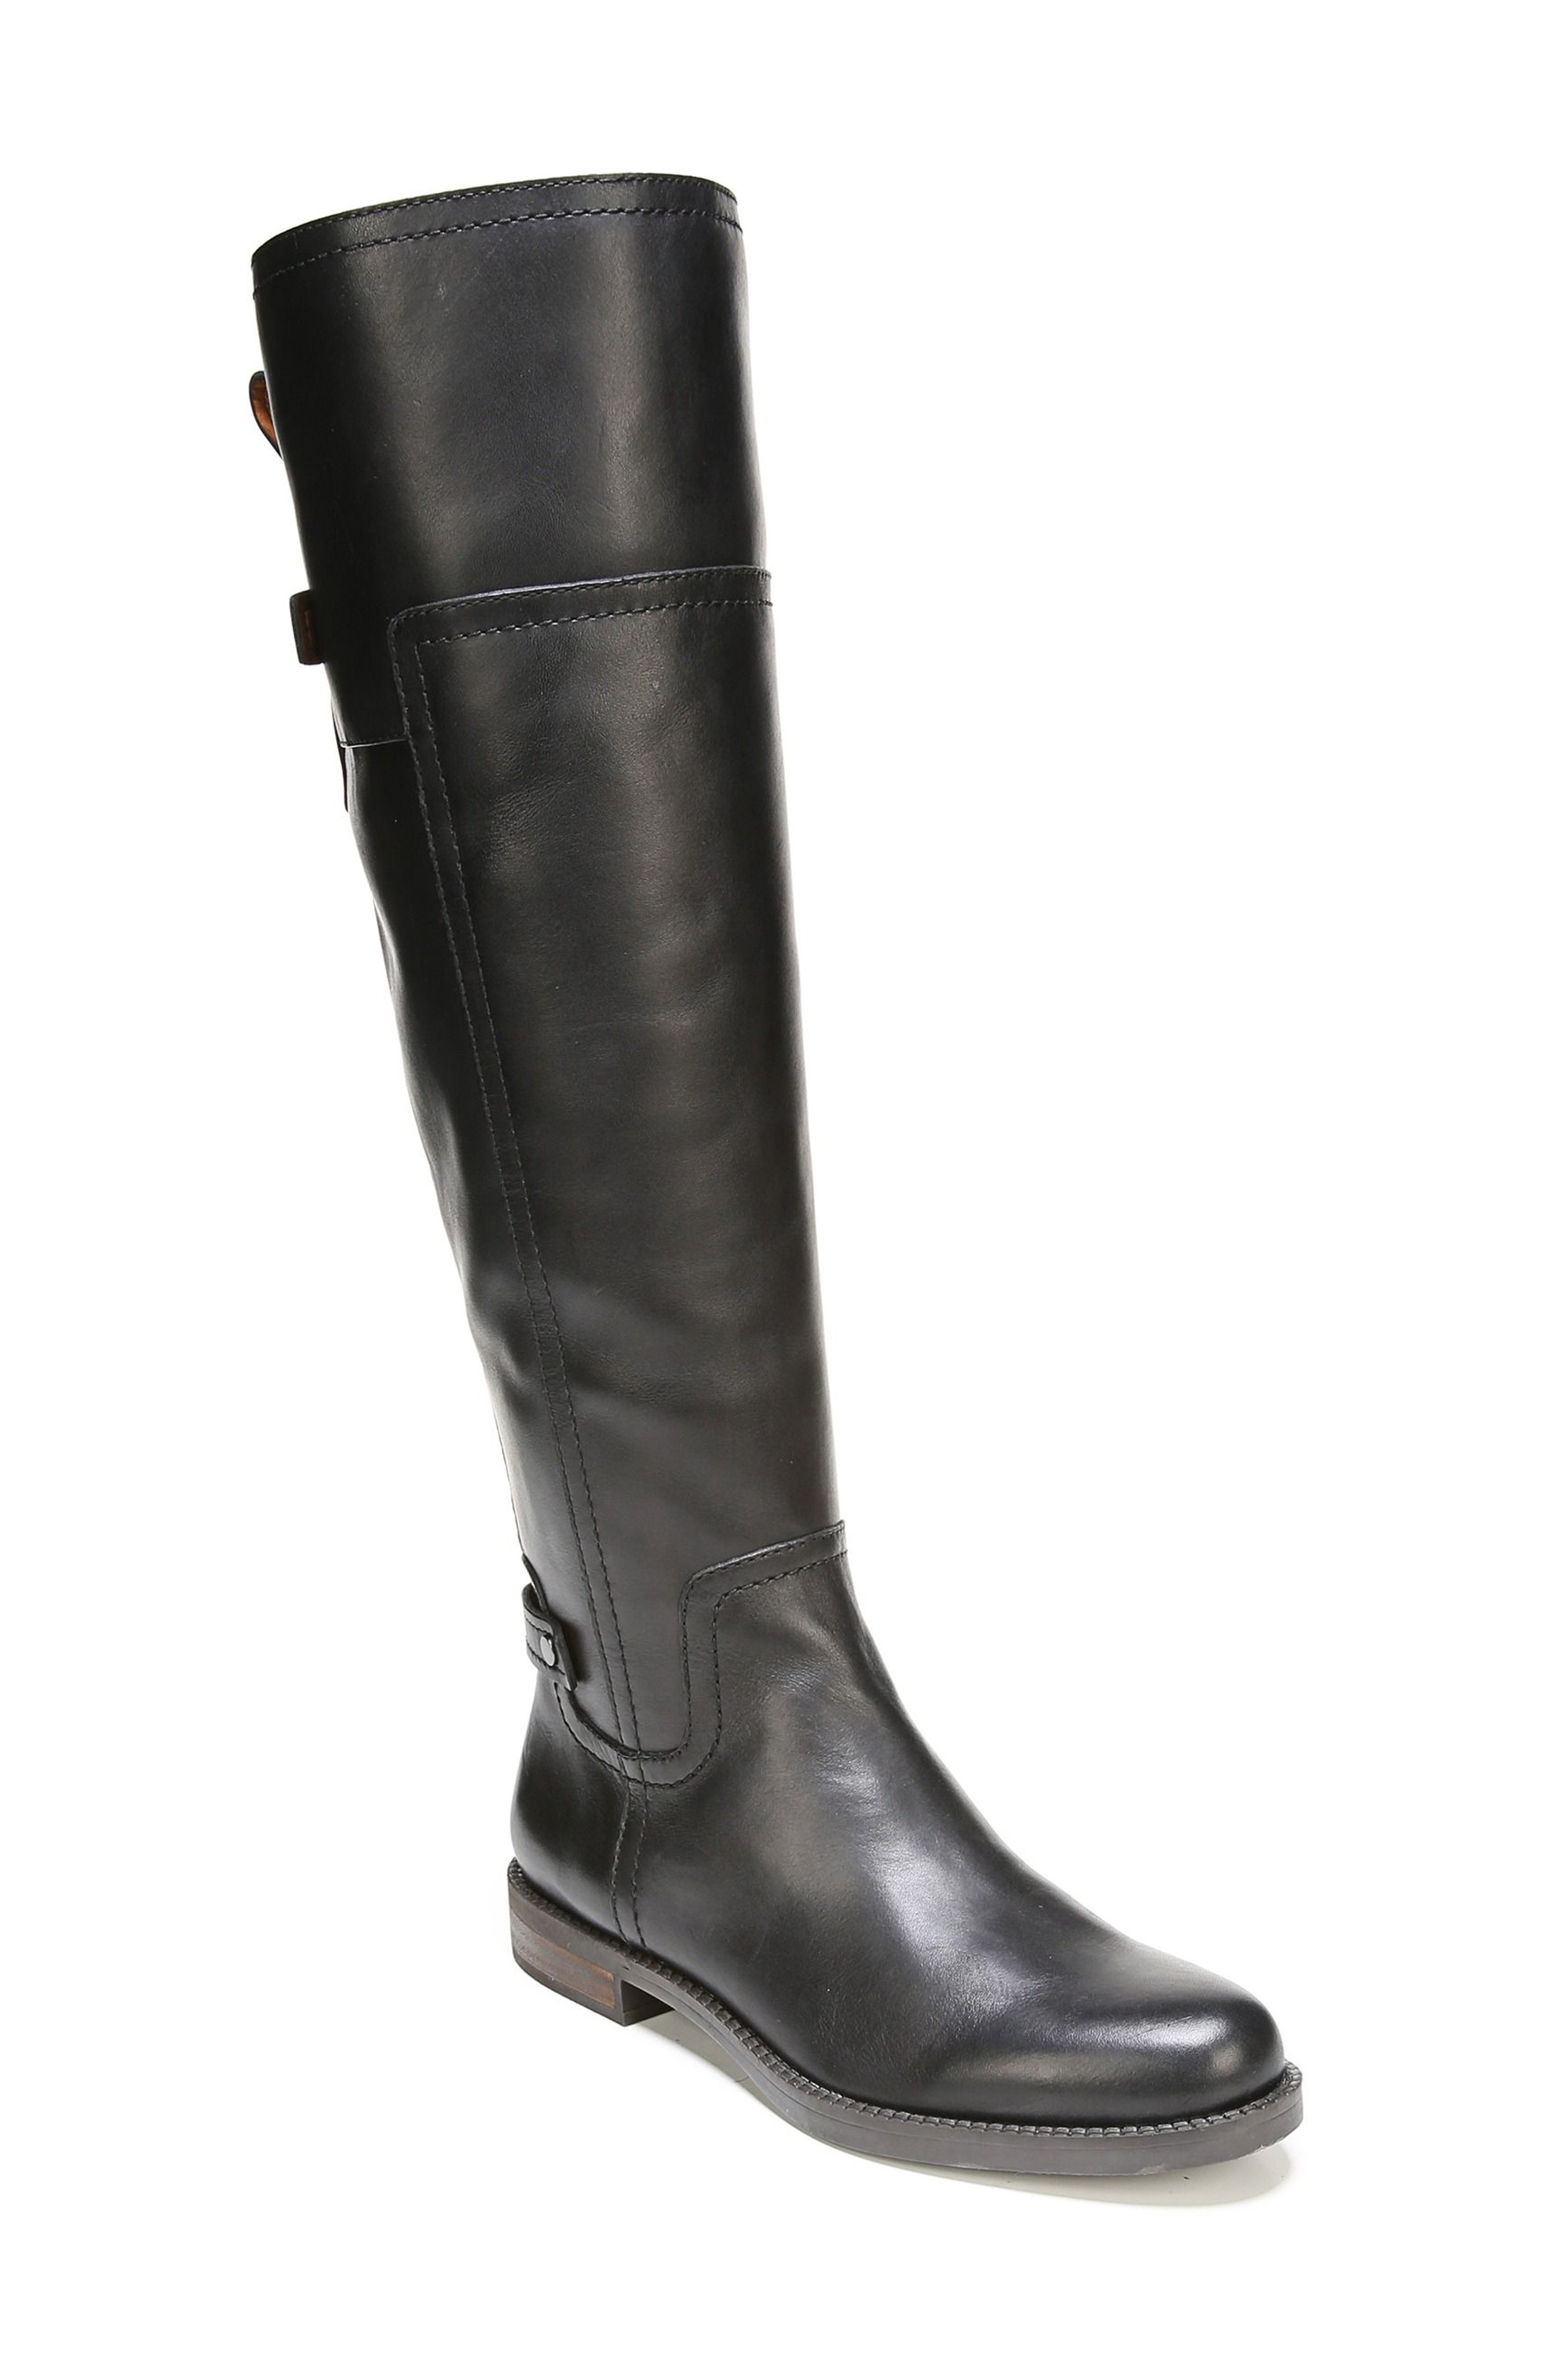 black boots for women knee-high boots for women | nordstrom nzbytol